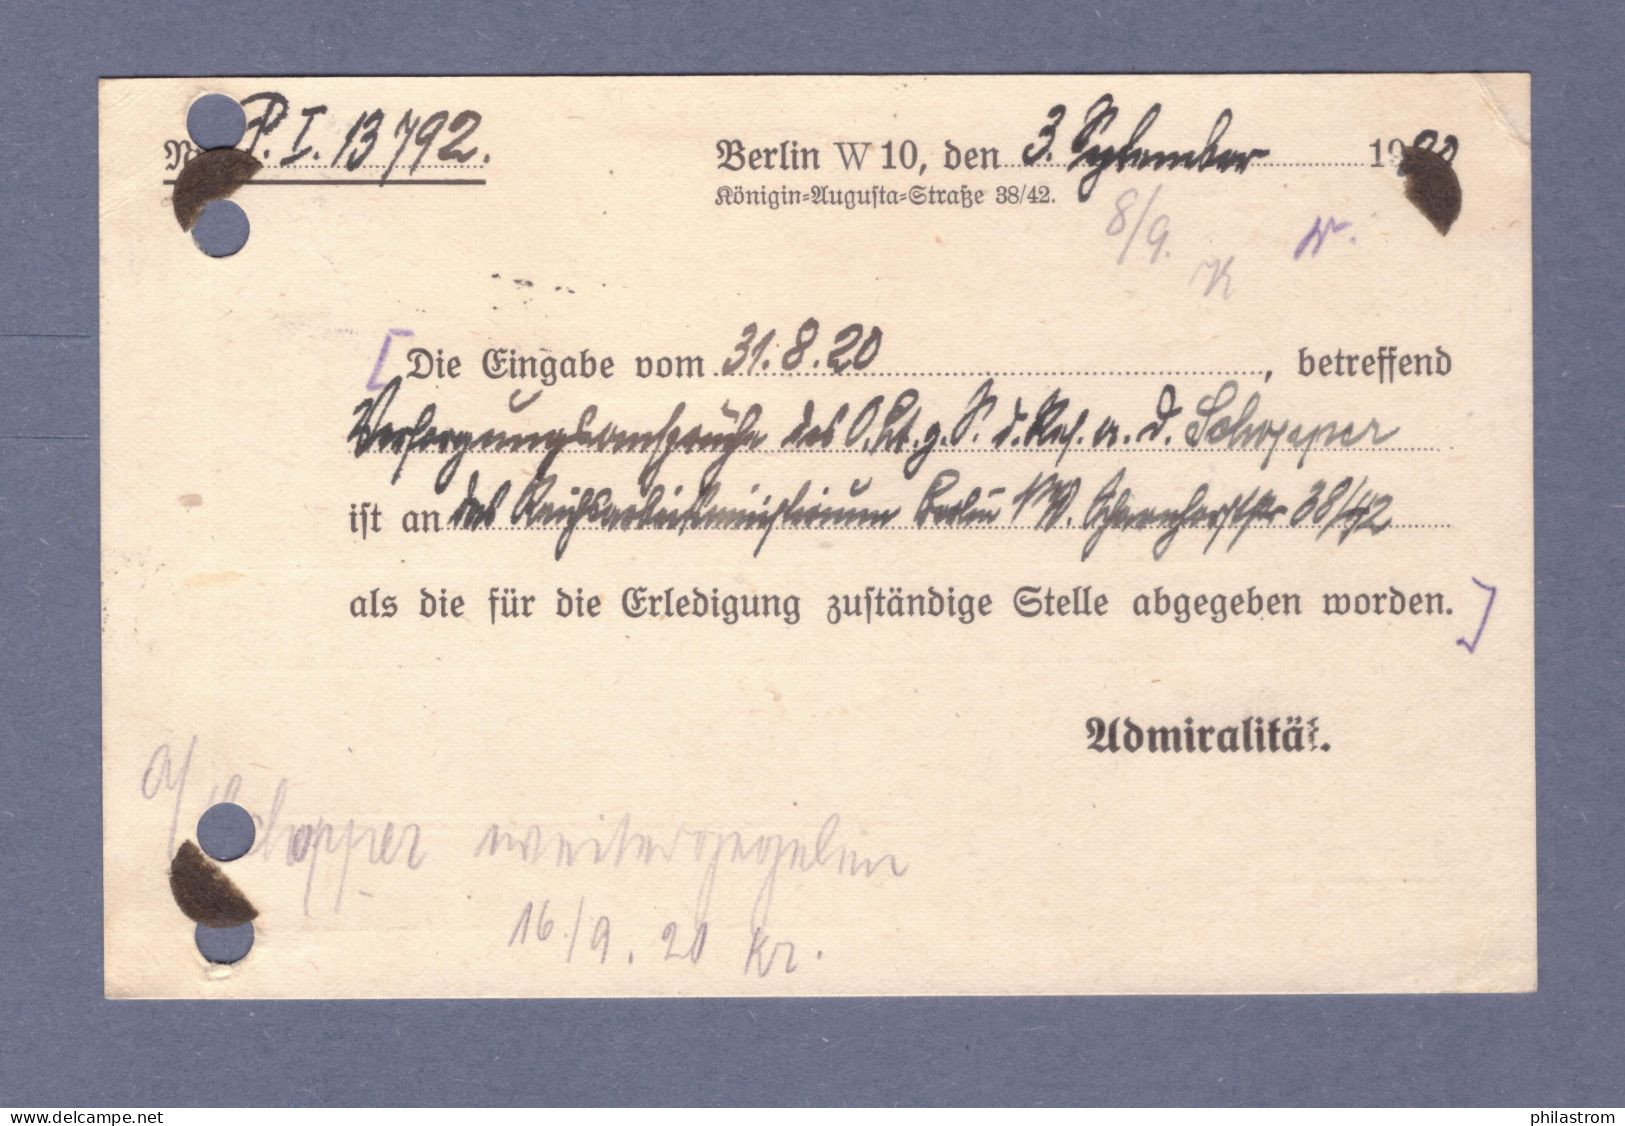 Weimar DIENST Postkarte- MARINESACHE - Reichs-Marine Admiralität - Mi 20 - Berlin SW 7.9.20 --> Hamburg (CG13110-234) - Servizio